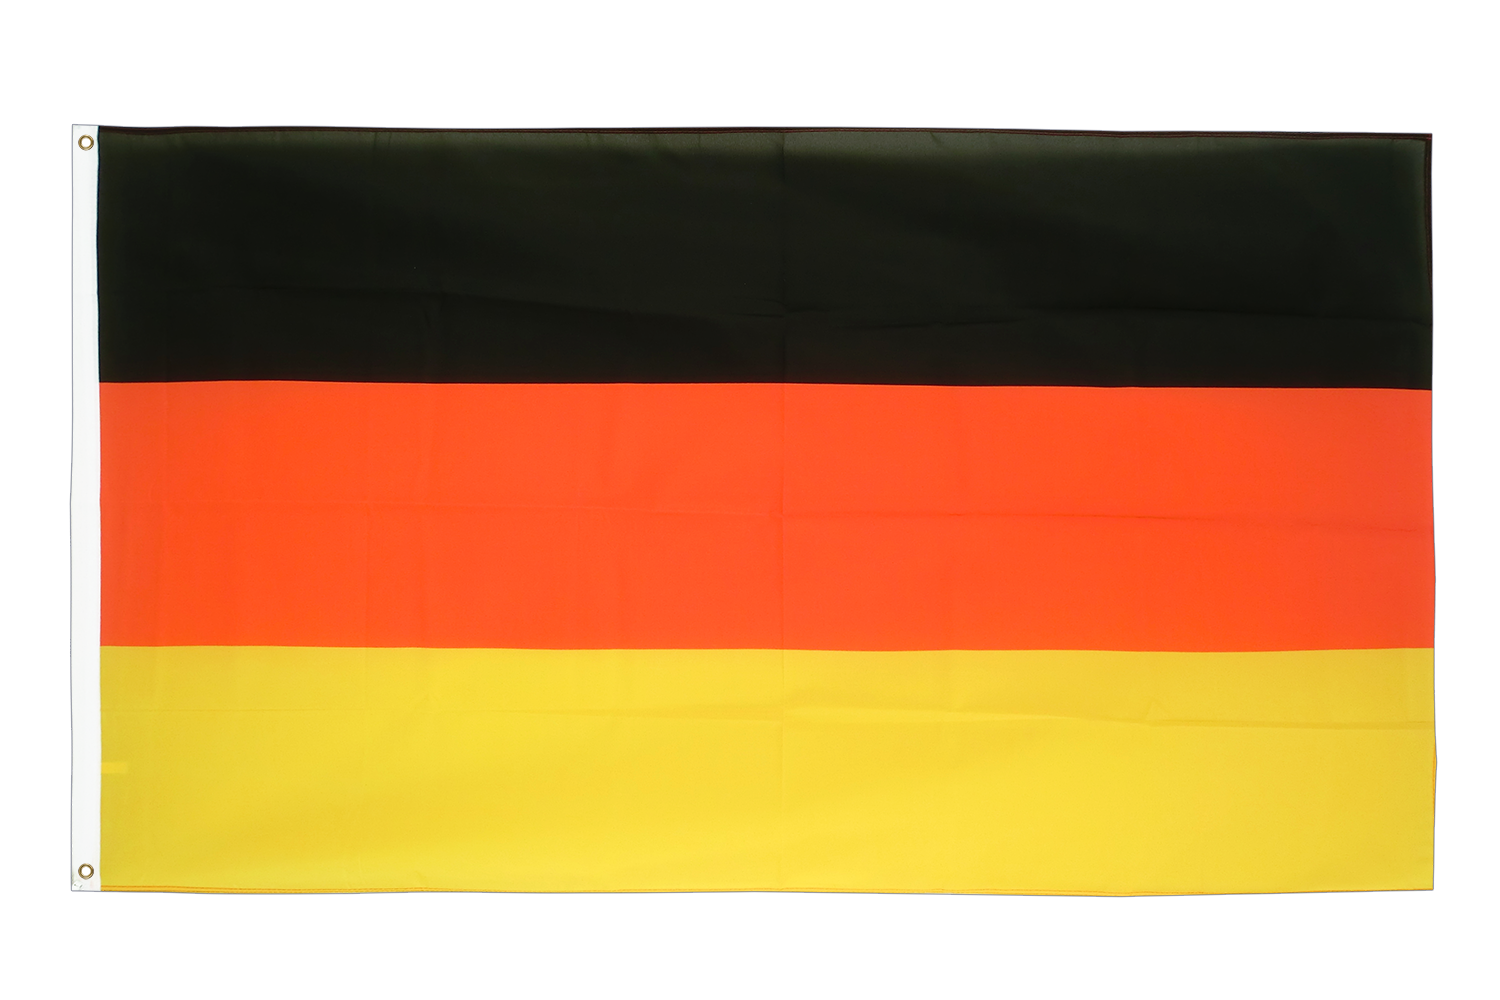 Fahne Flagge Deutscher Orden Hochmeister 60 x 90 cm Bootsflagge Premiumqualität